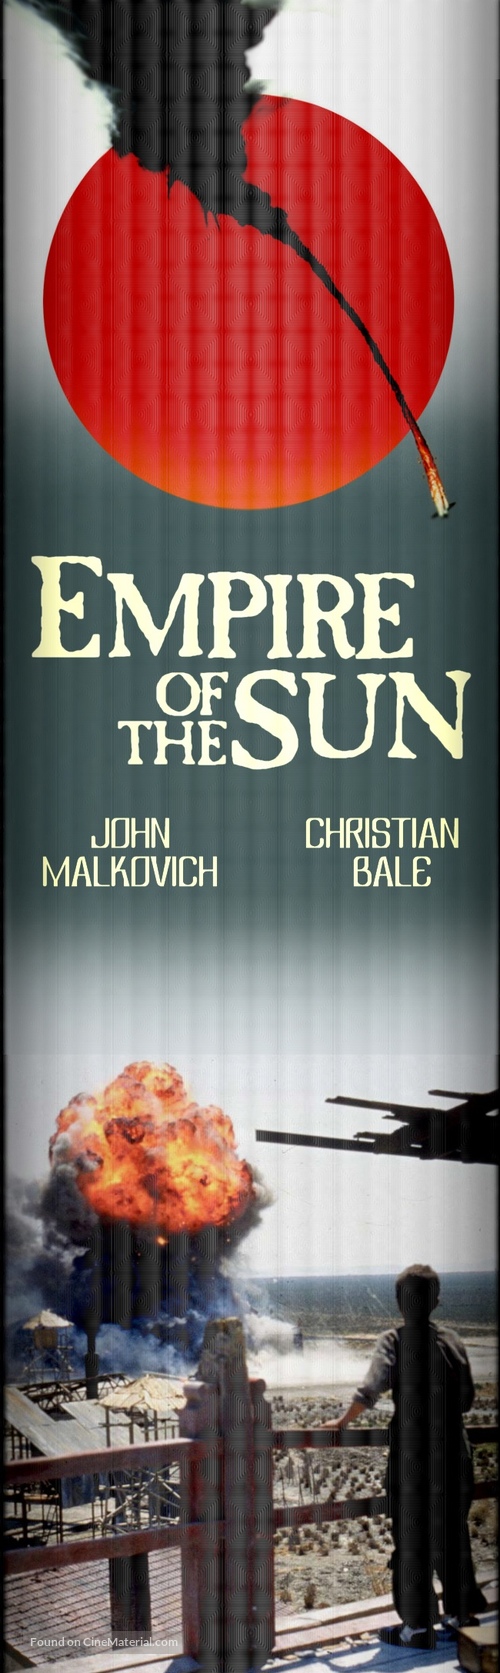 Empire Of The Sun - British Movie Cover